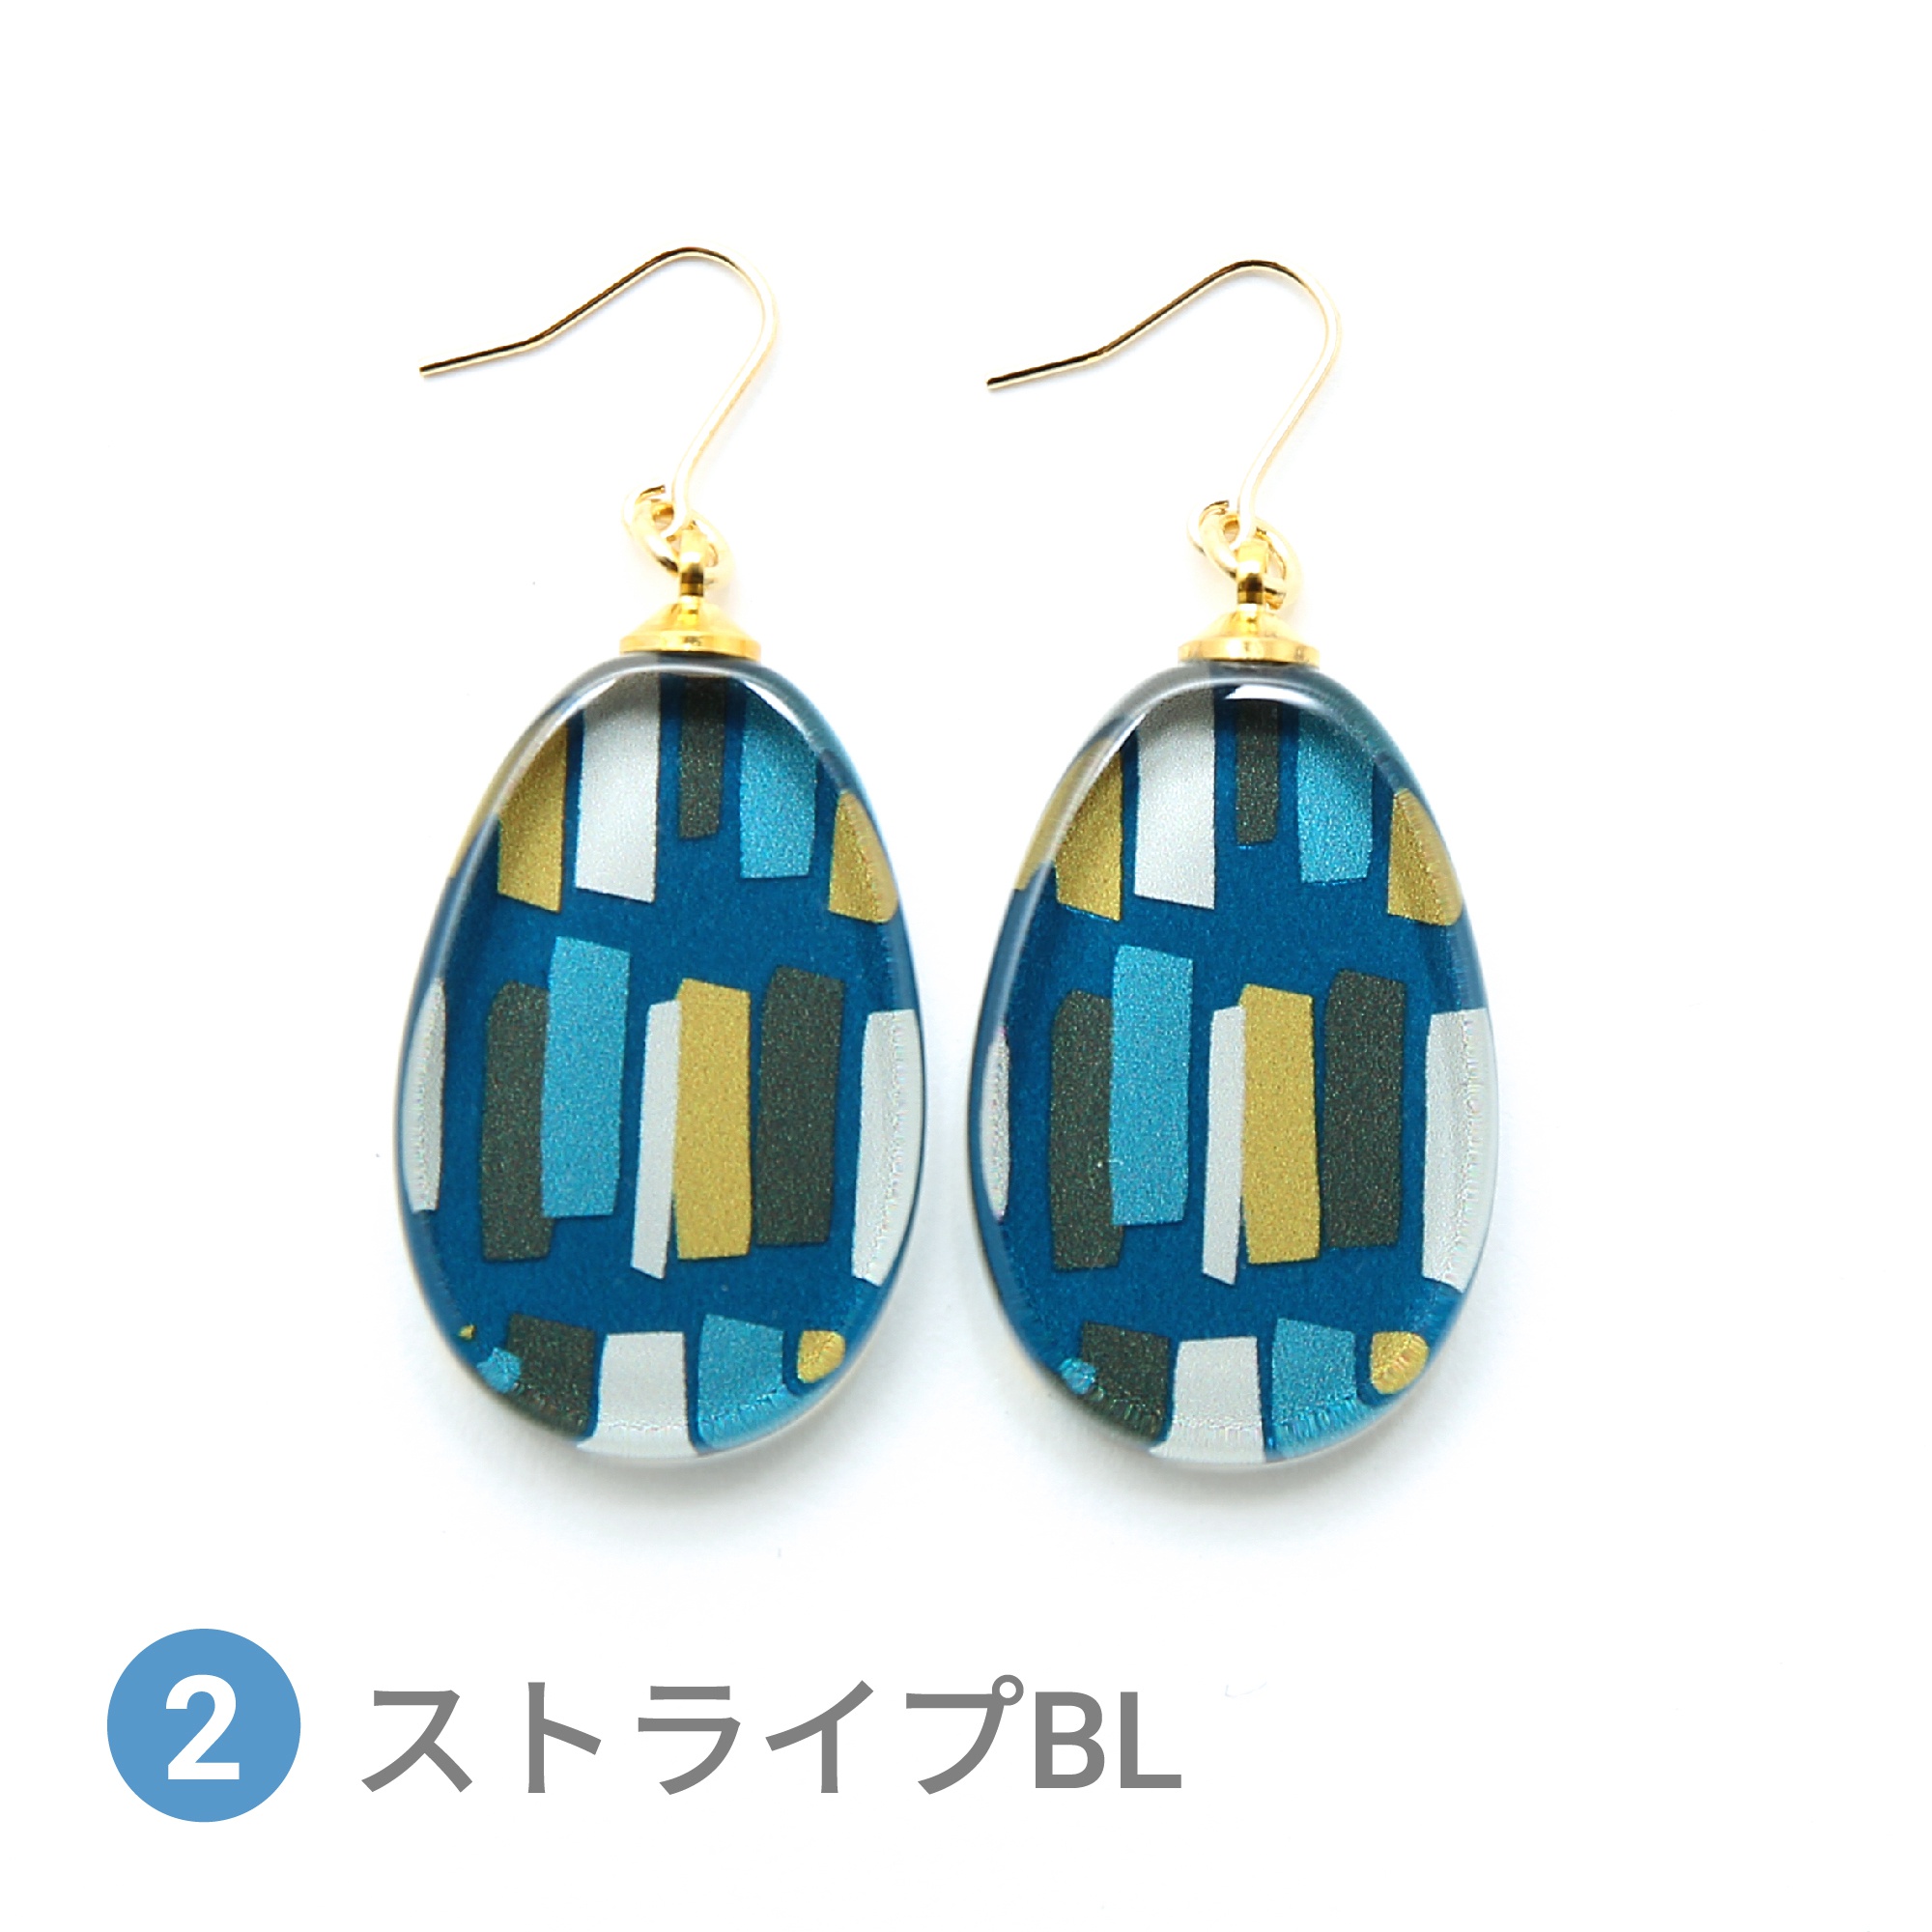 Glass accessories Pierced Earring SCANDINAVIAN stripe blue drop shape